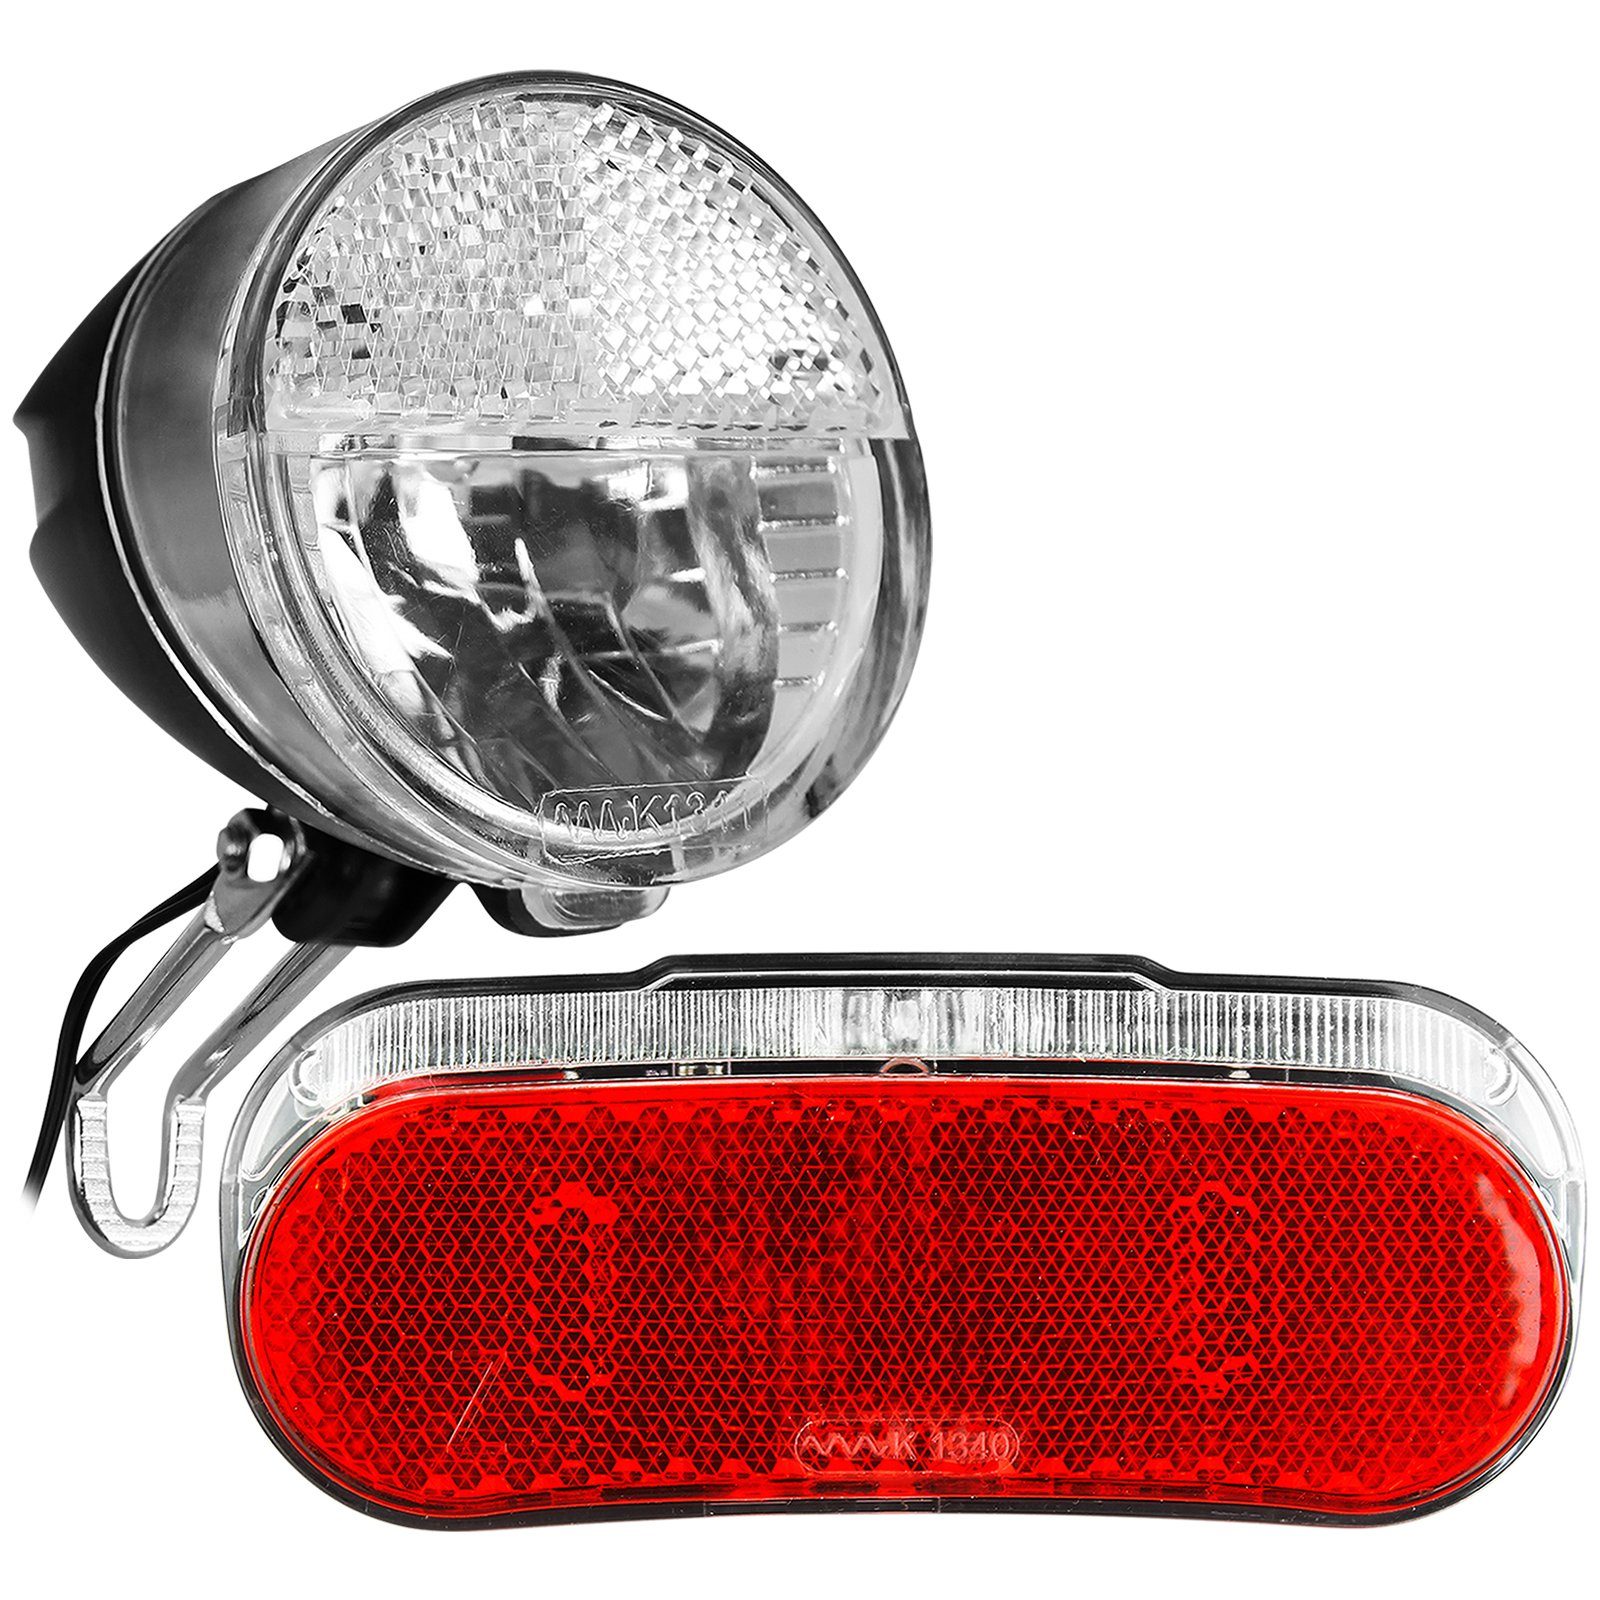 LED Fahrrad Front Scheinwerfer Lampe 15 LUX Nabendynamo Beleuchtung v,  11,99 €